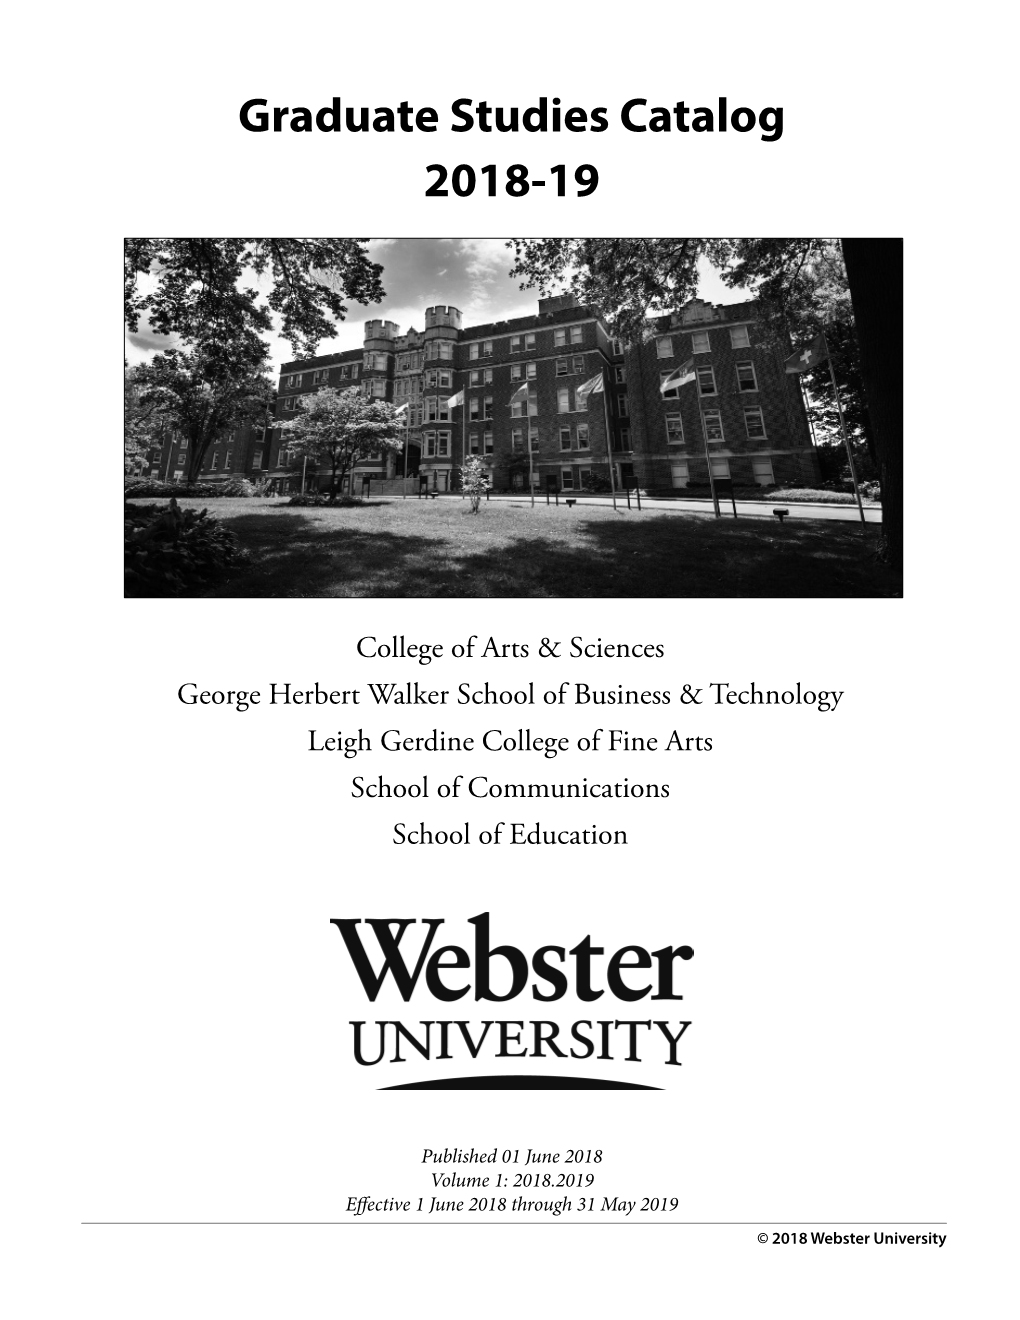 Graduate Studies Catalog 2018-19